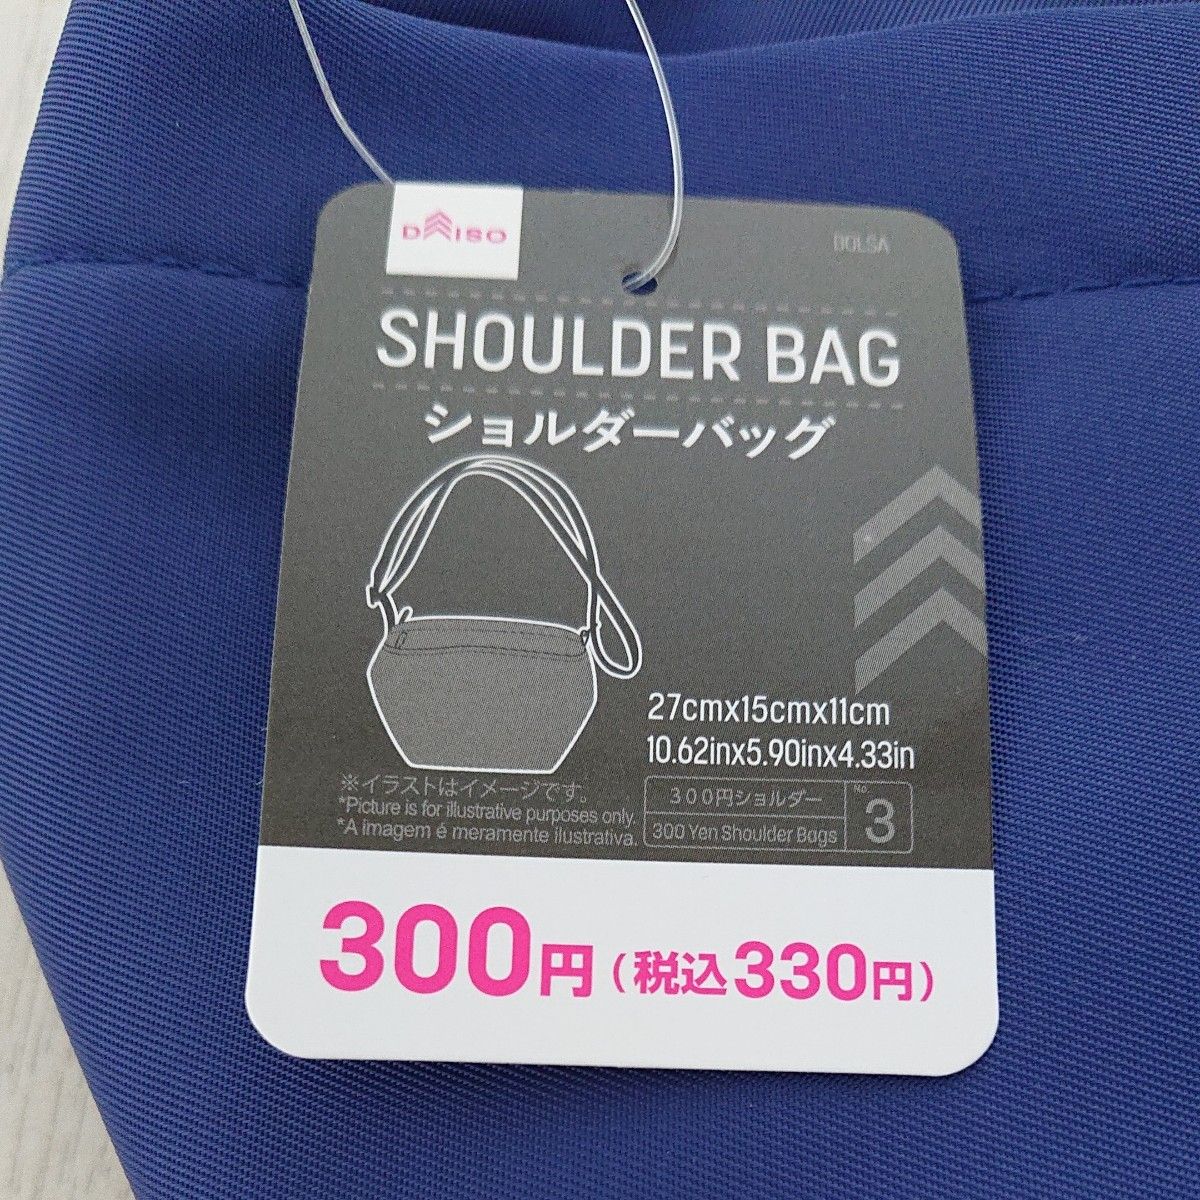 【訳あり】【新品未使用】ダイソー ショルダーバッグ 斜めがけバッグ 男女兼用 ブルー 青